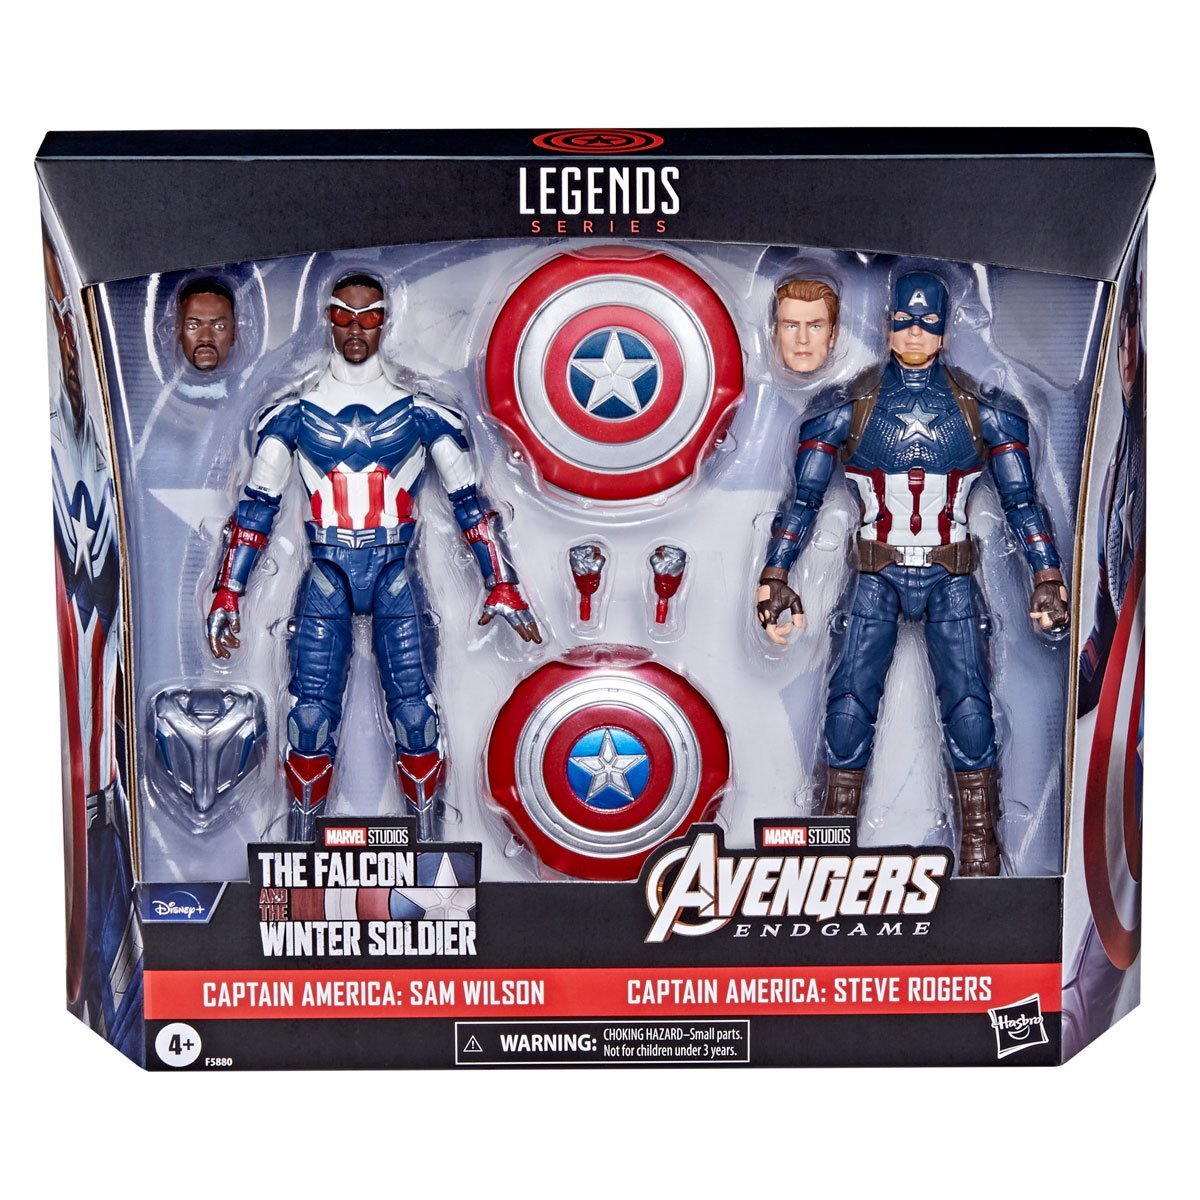 Avengers Marvel Legends 6-Inch Captain America 2-Pack Steve Rogers & Sam Wilson